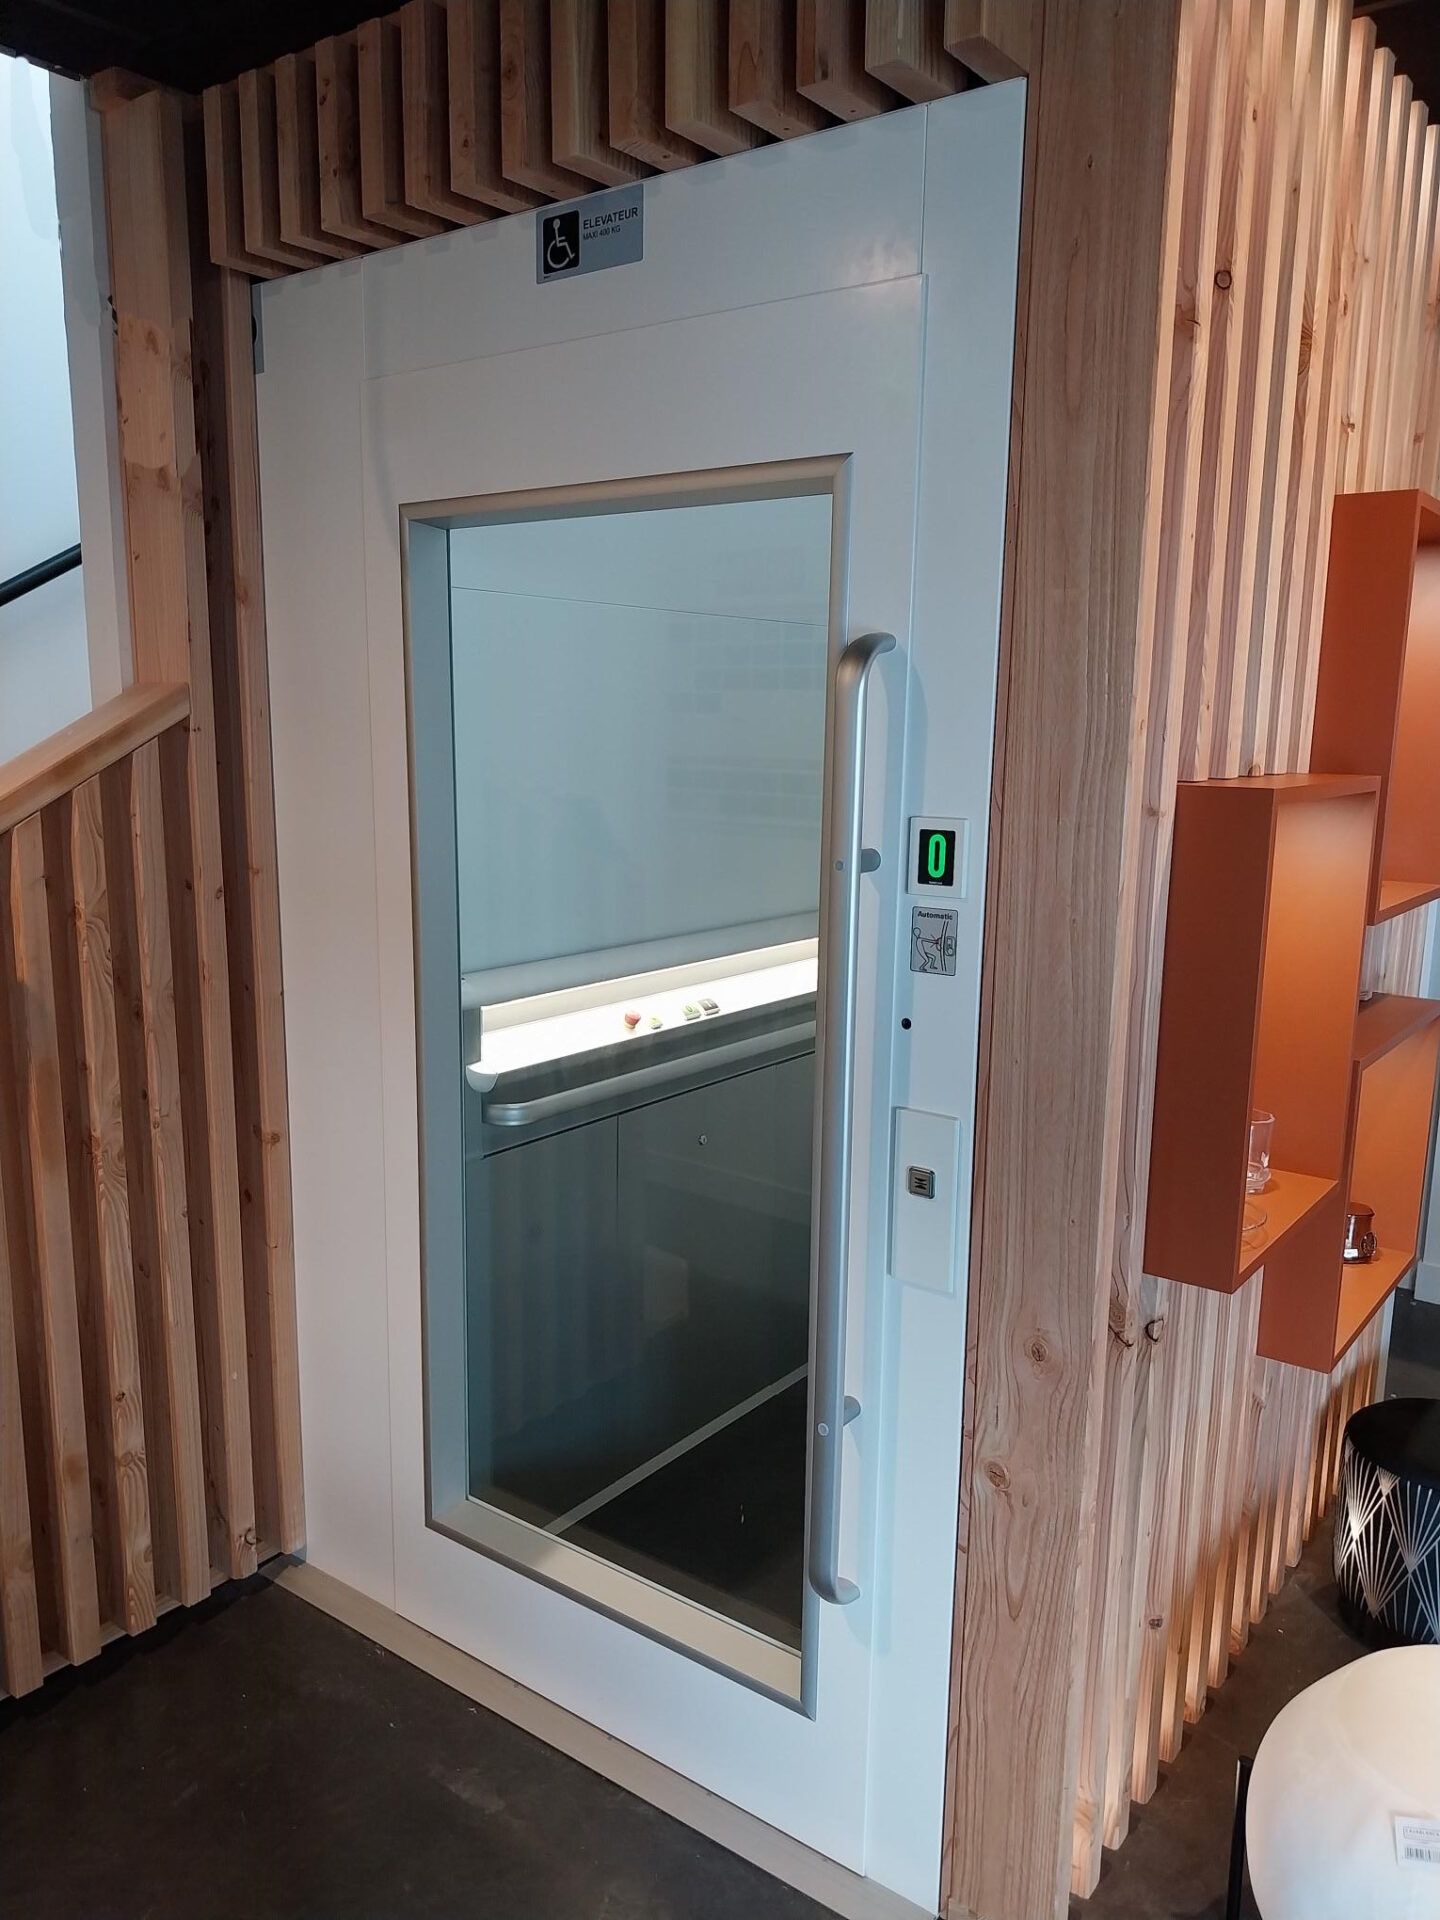 A chaque étage une porte grand vitrage avec motorisation invisible permet l’ouverture et la fermeture automatique. Les futurs clients à mobilité réduite peuvent donc accéder au niveau supérieur de l’établissement sans problème et en toute autonomie.